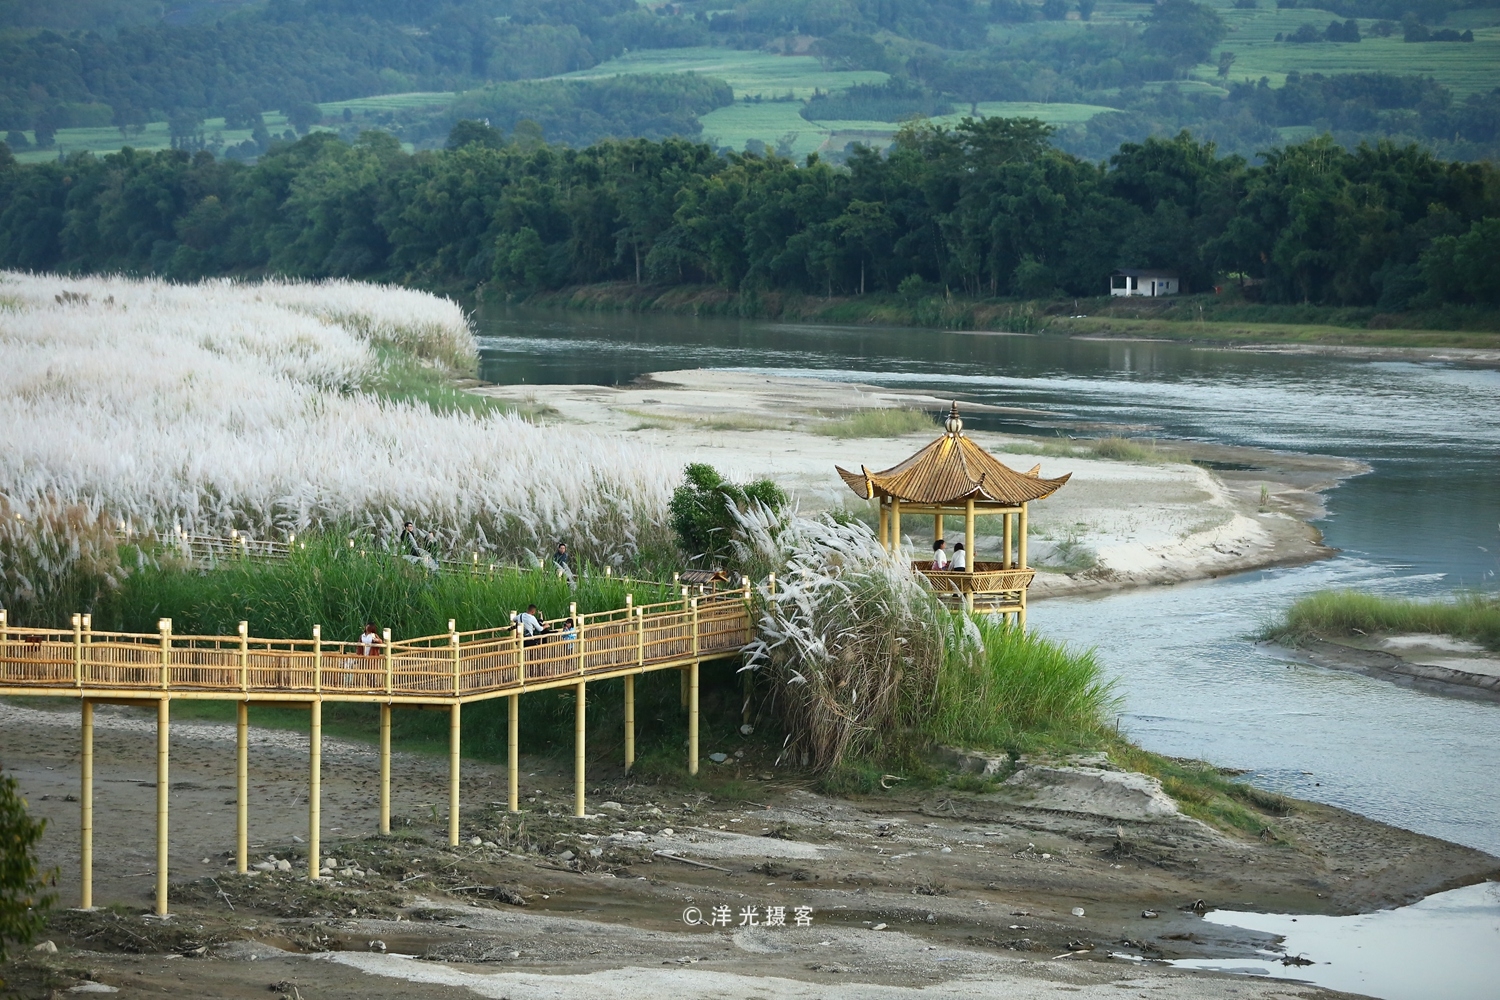 原生态的傣家竹桥横跨在芦苇花盛放的大盈江上,这才是最美的秋色